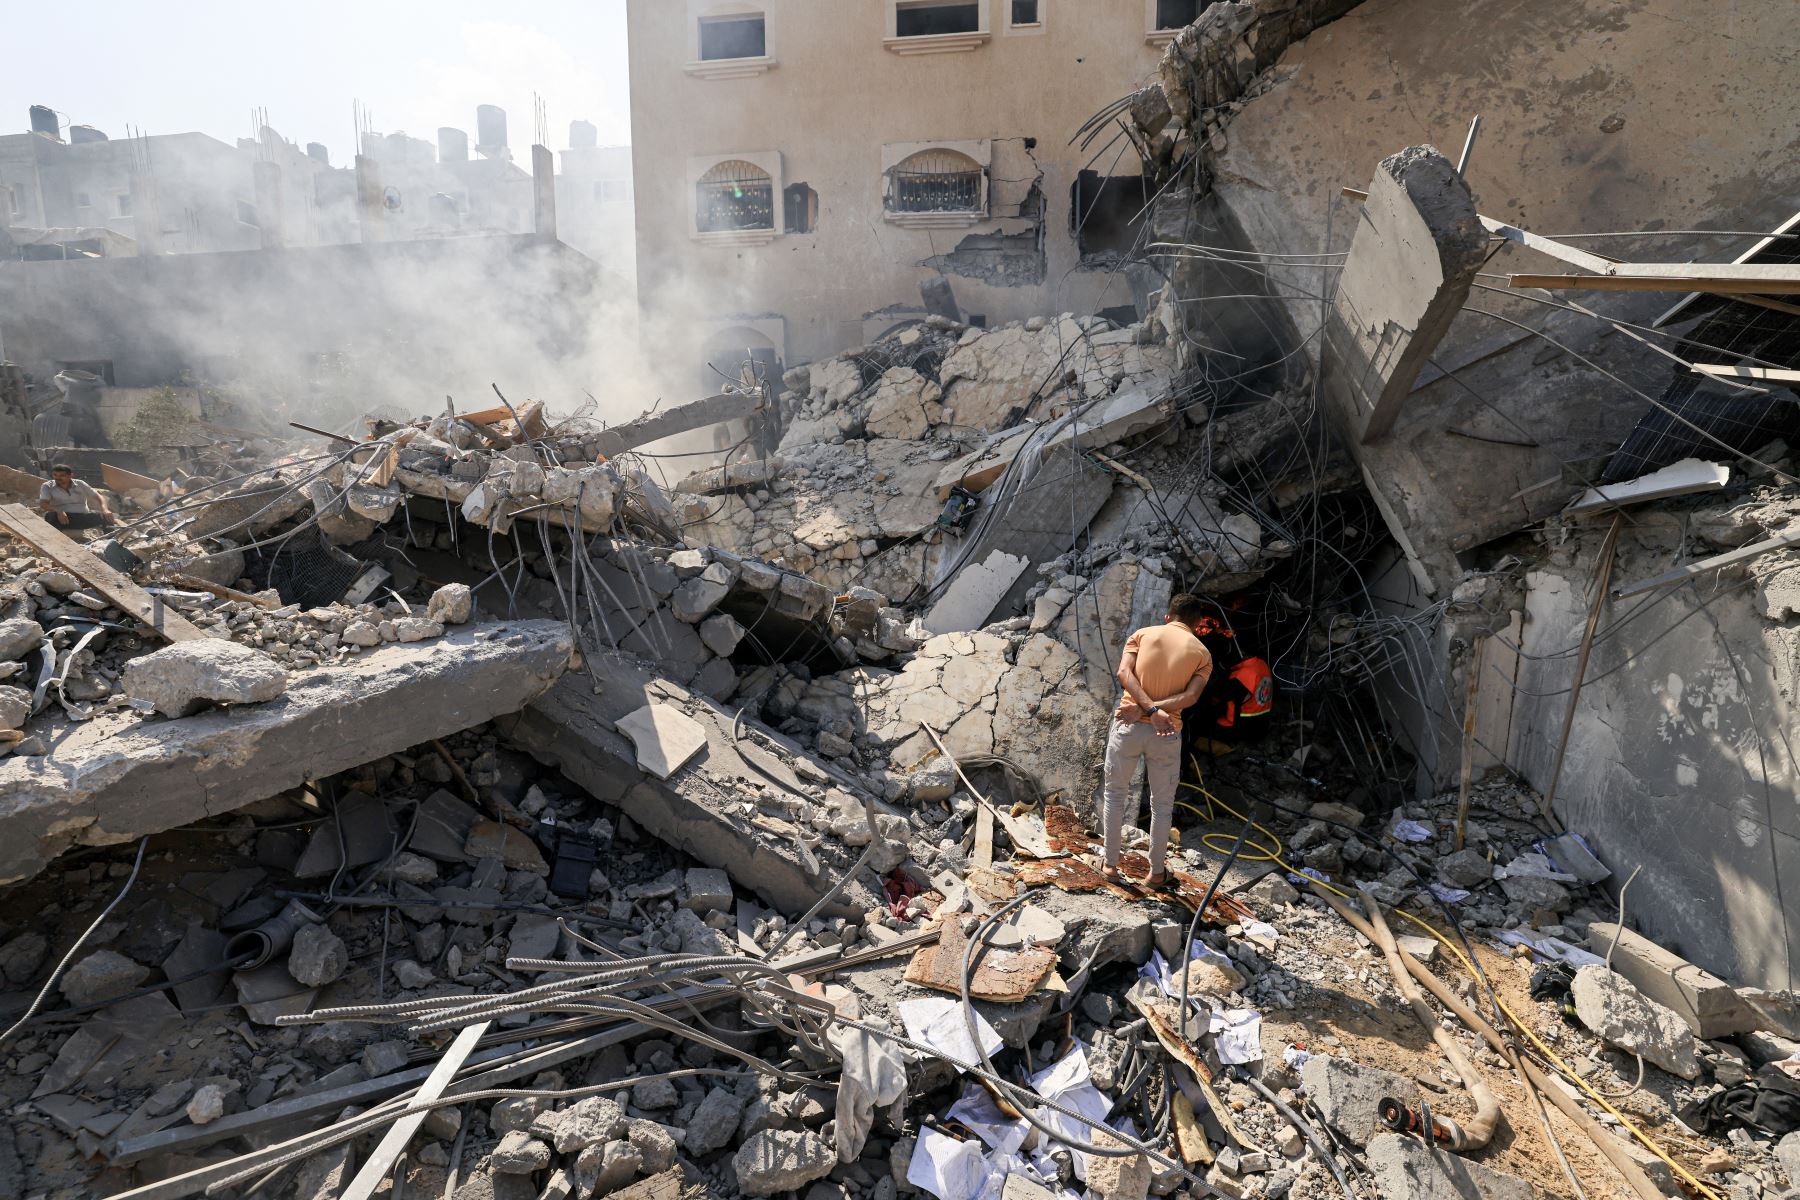 Los palestinos buscan supervivientes entre los escombros de un edificio derrumbado tras un ataque israelí, en Khan Yunis, en el sur de la Franja de Gaza.
Foto: AFP